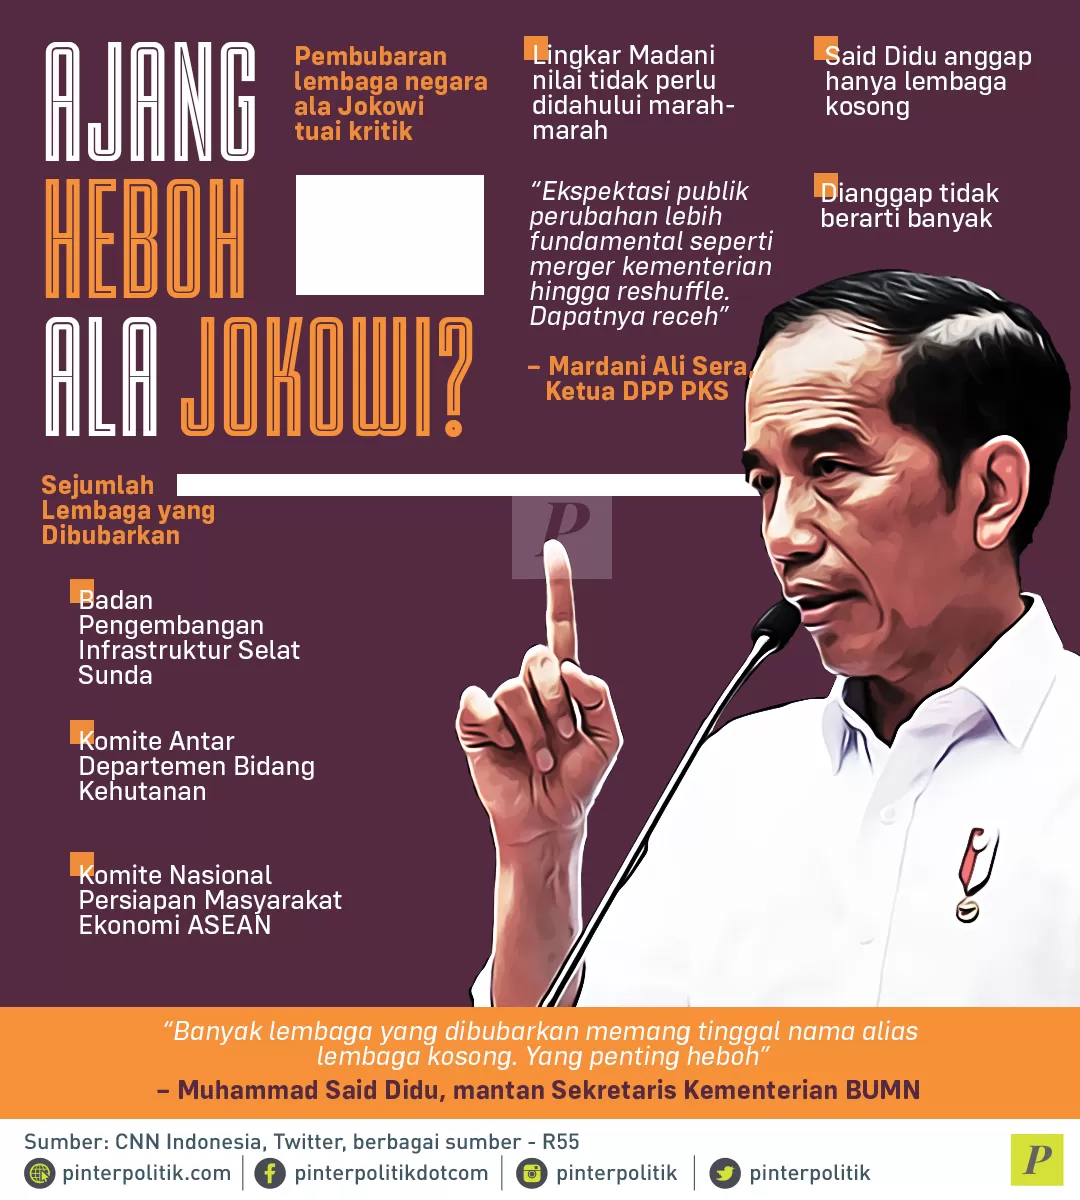 Ajang Heboh Ala Jokowi?